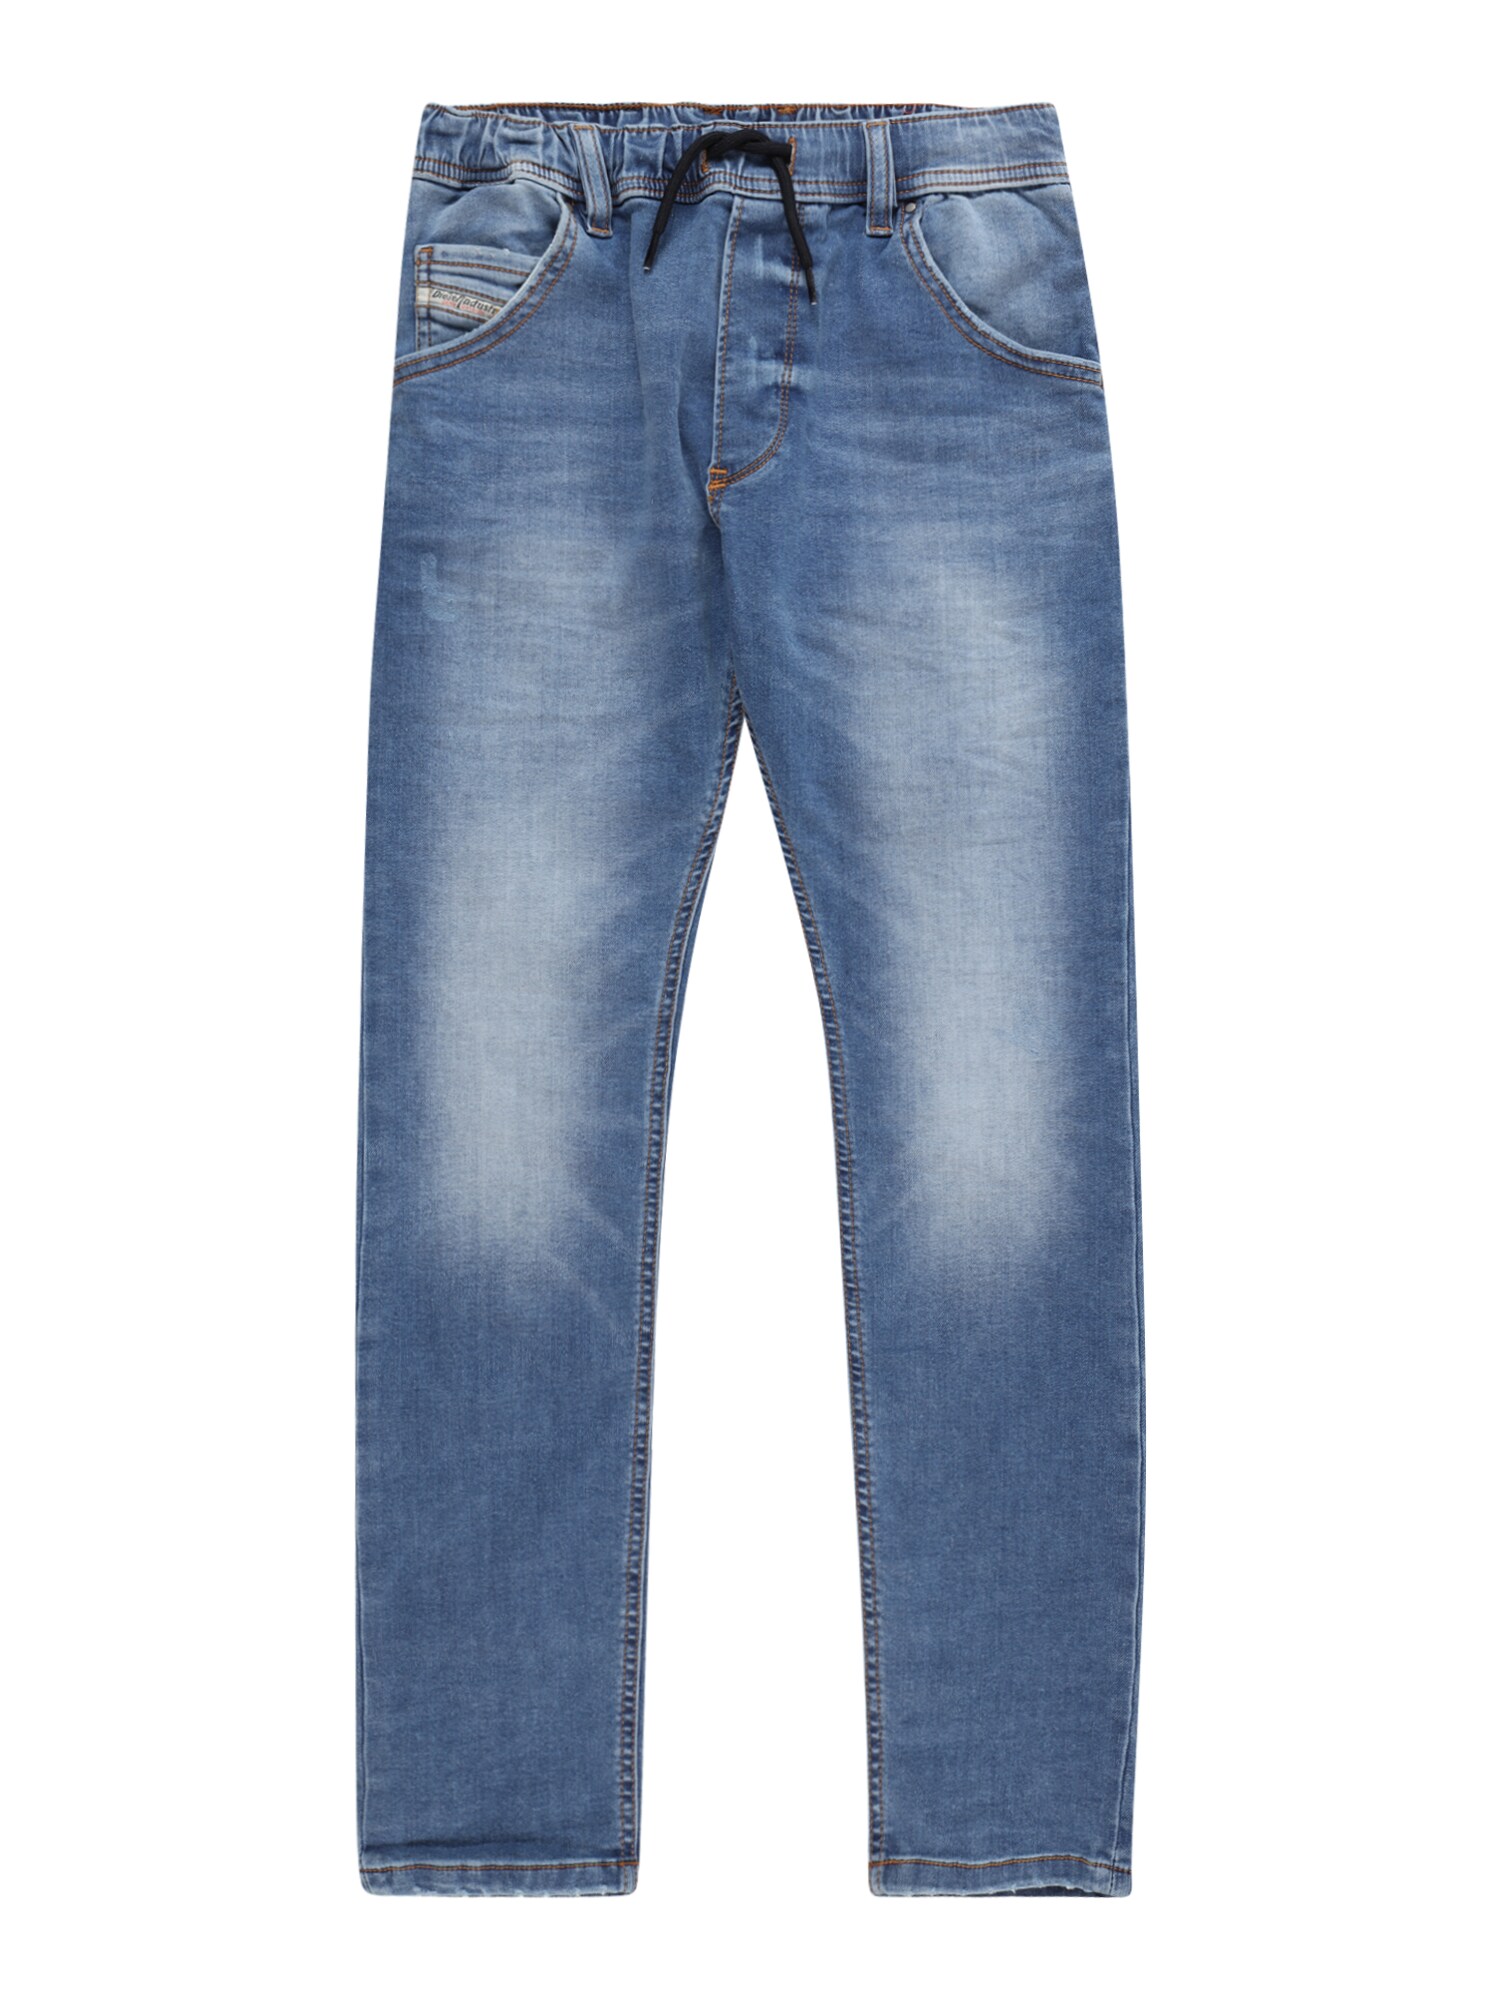 Diesel DIESEL Jeans 'KROOLEY' blue denim